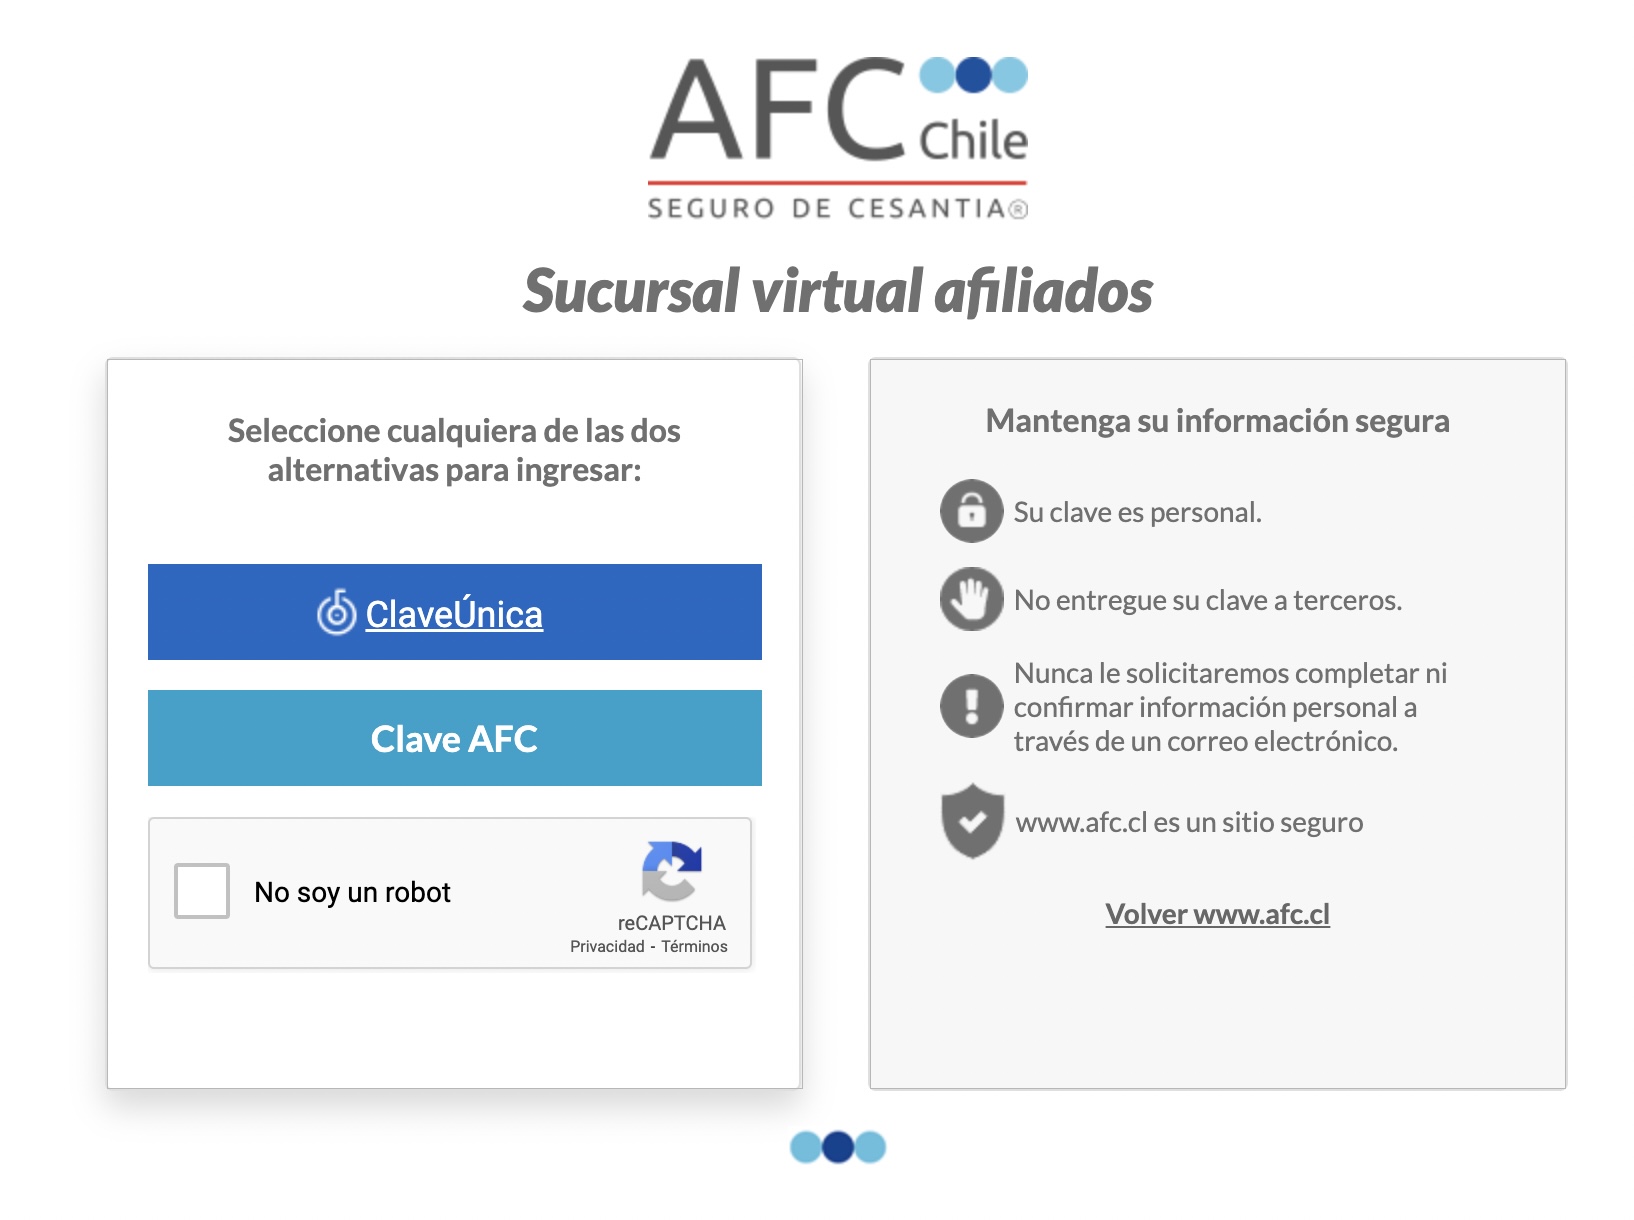 Captura de pantalla Sucursal virtual afiliados AFC.